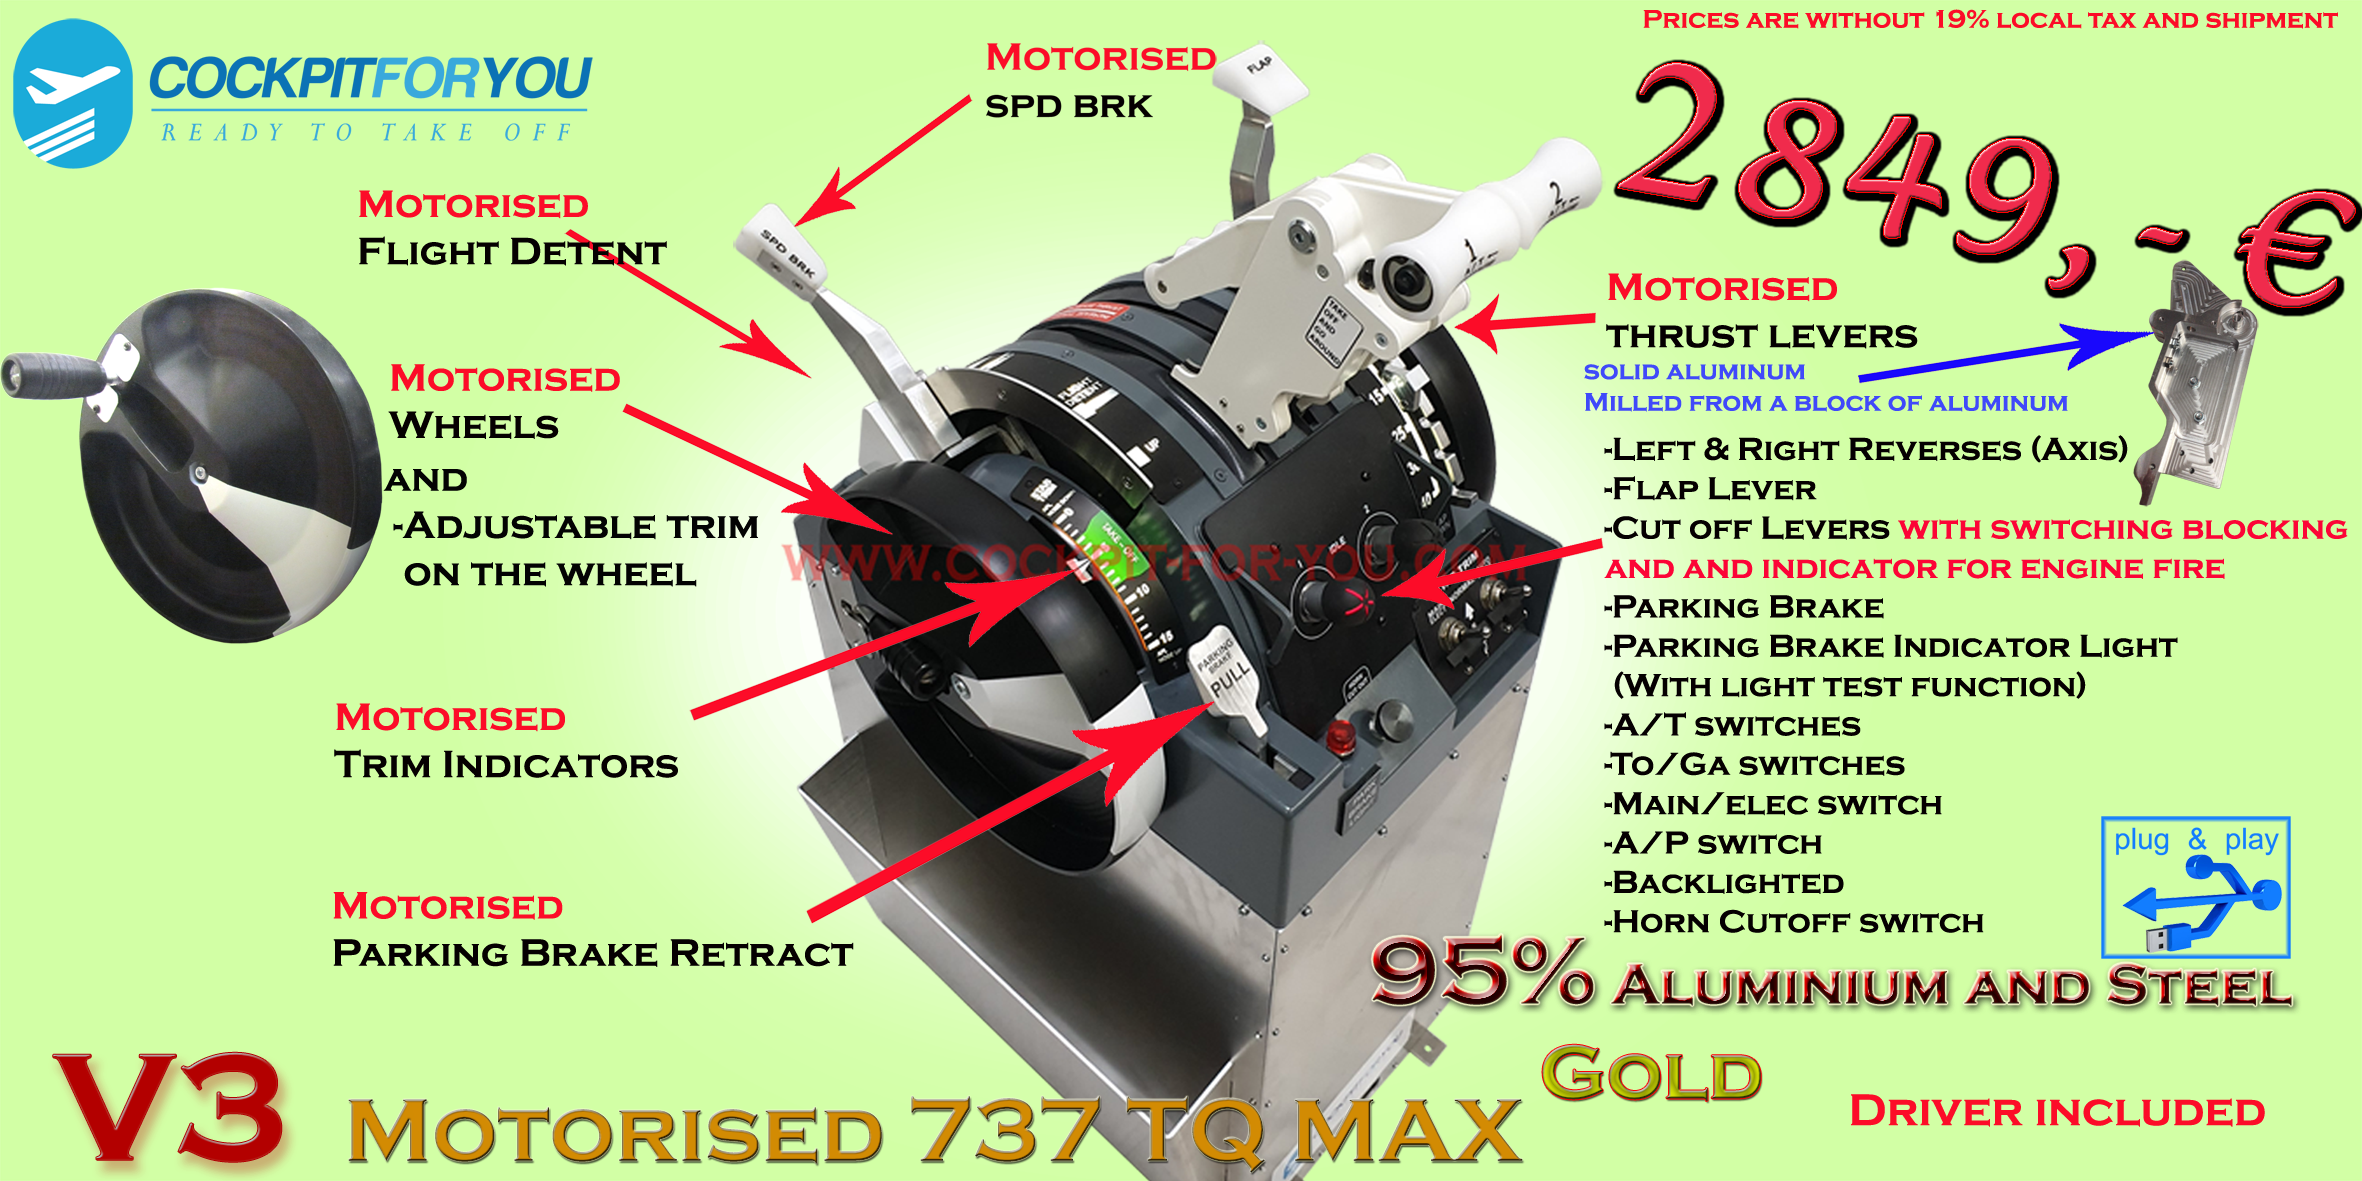 QT-B737_MAX_V3_Motorised_Cockpit-for-you_Gold_S